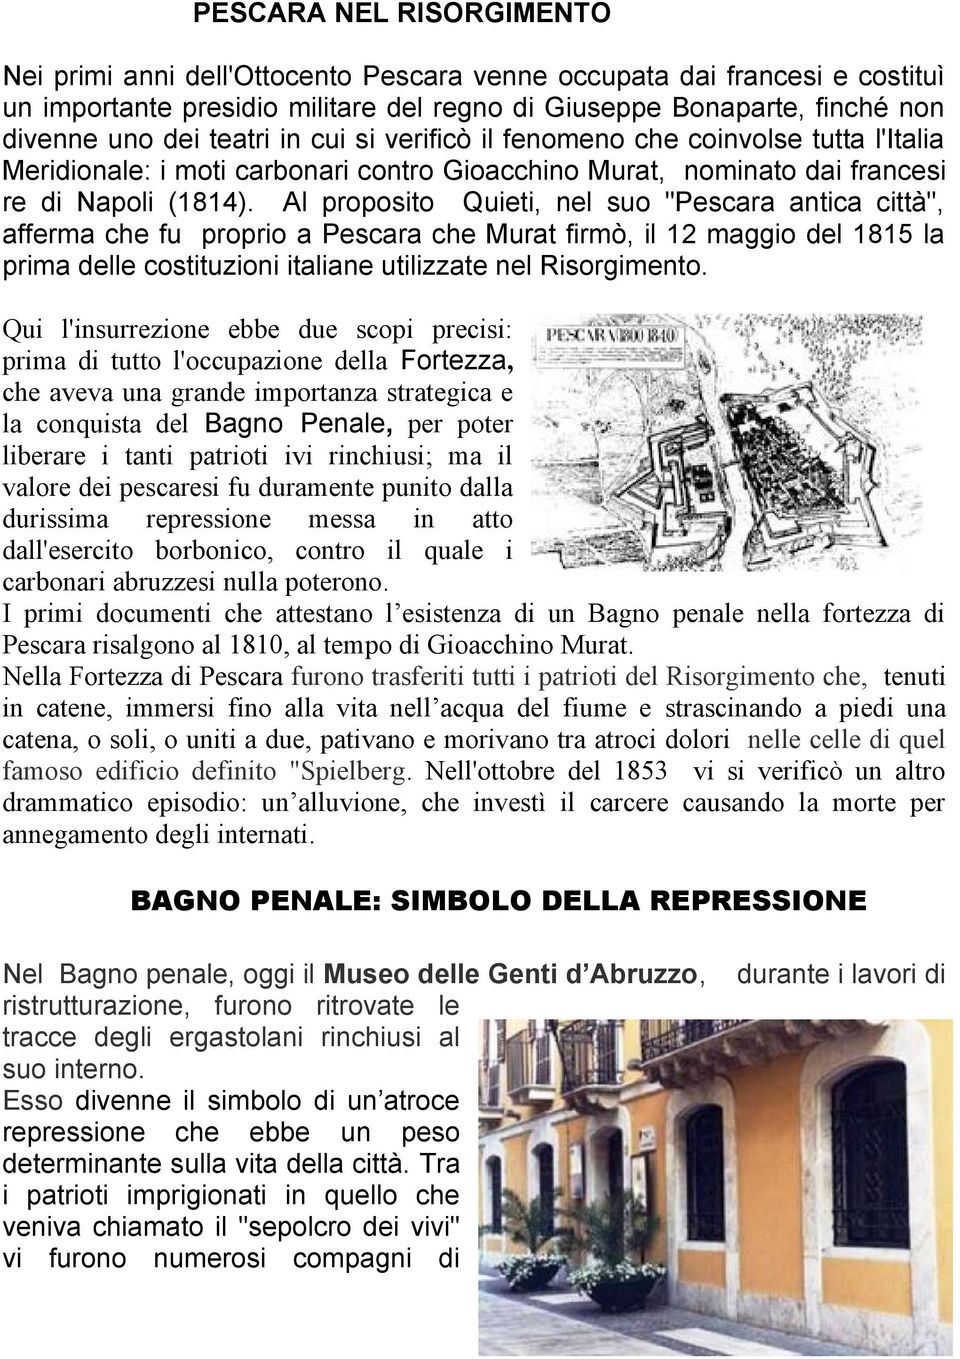 Al proposito Quieti, nel suo "Pescara antica città", afferma che fu proprio a Pescara che Murat firmò, il 12 maggio del 1815 la prima delle costituzioni italiane utilizzate nel Risorgimento.